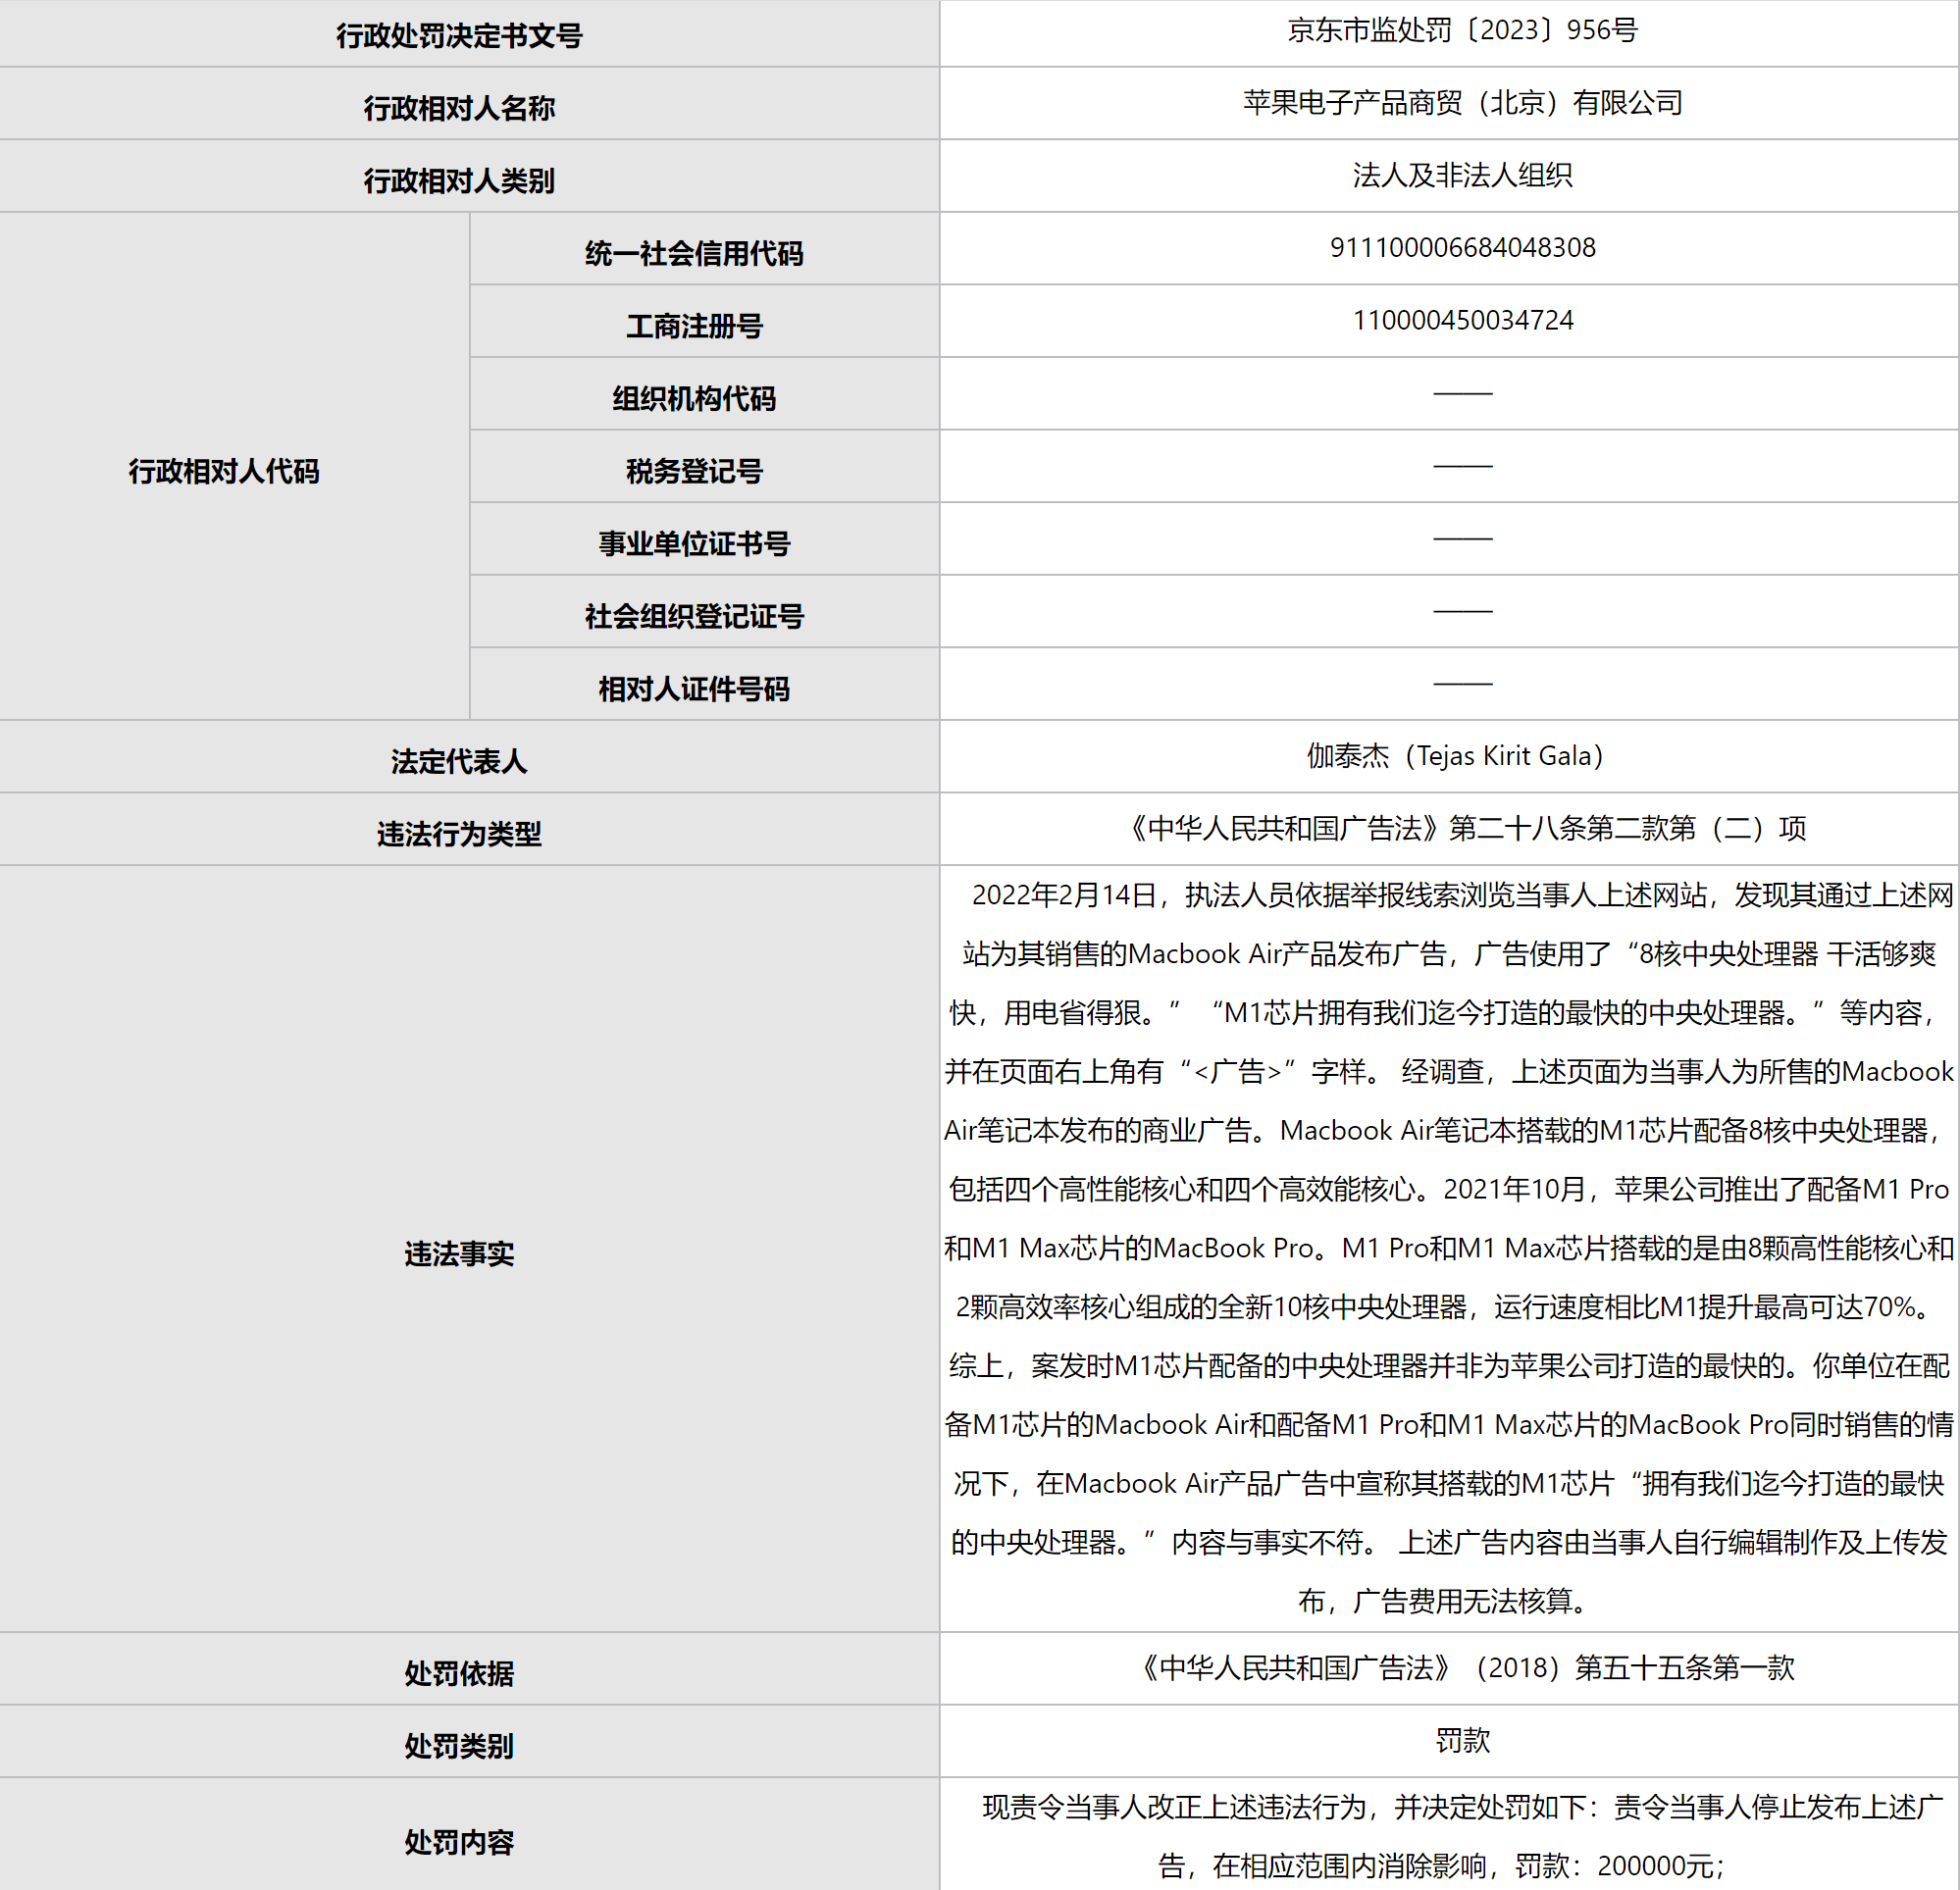 苹果因发布虚假广告 被北京监管部门行政处罚20万元